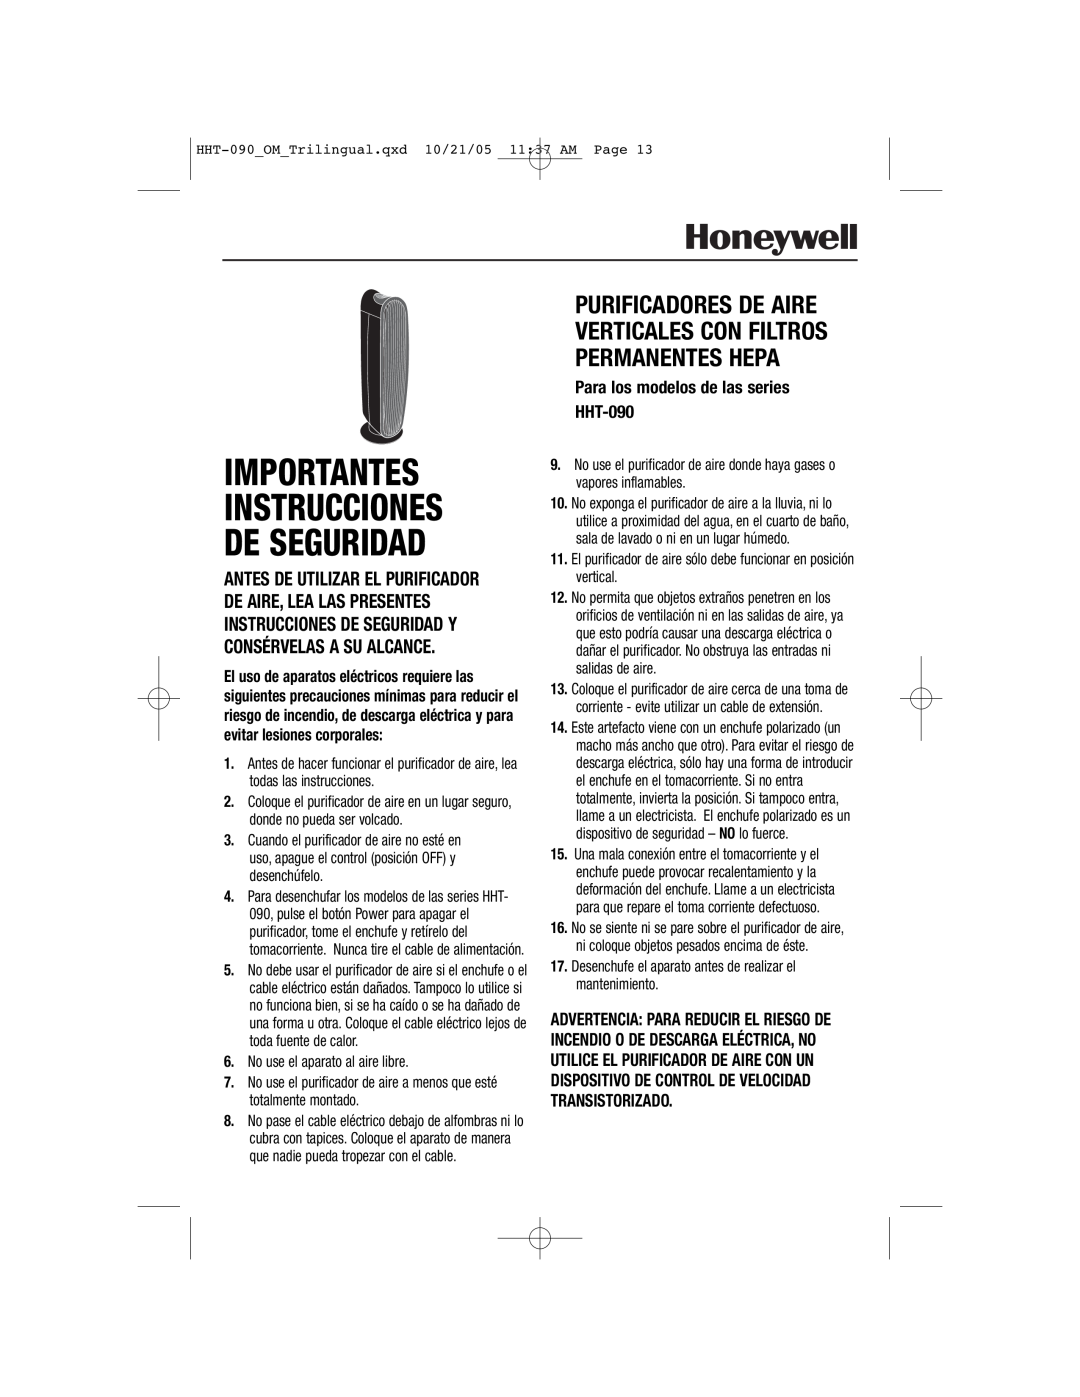 Honeywell important safety instructions Importantes Instrucciones De Seguridad, Para los modelos de las series HHT-090 